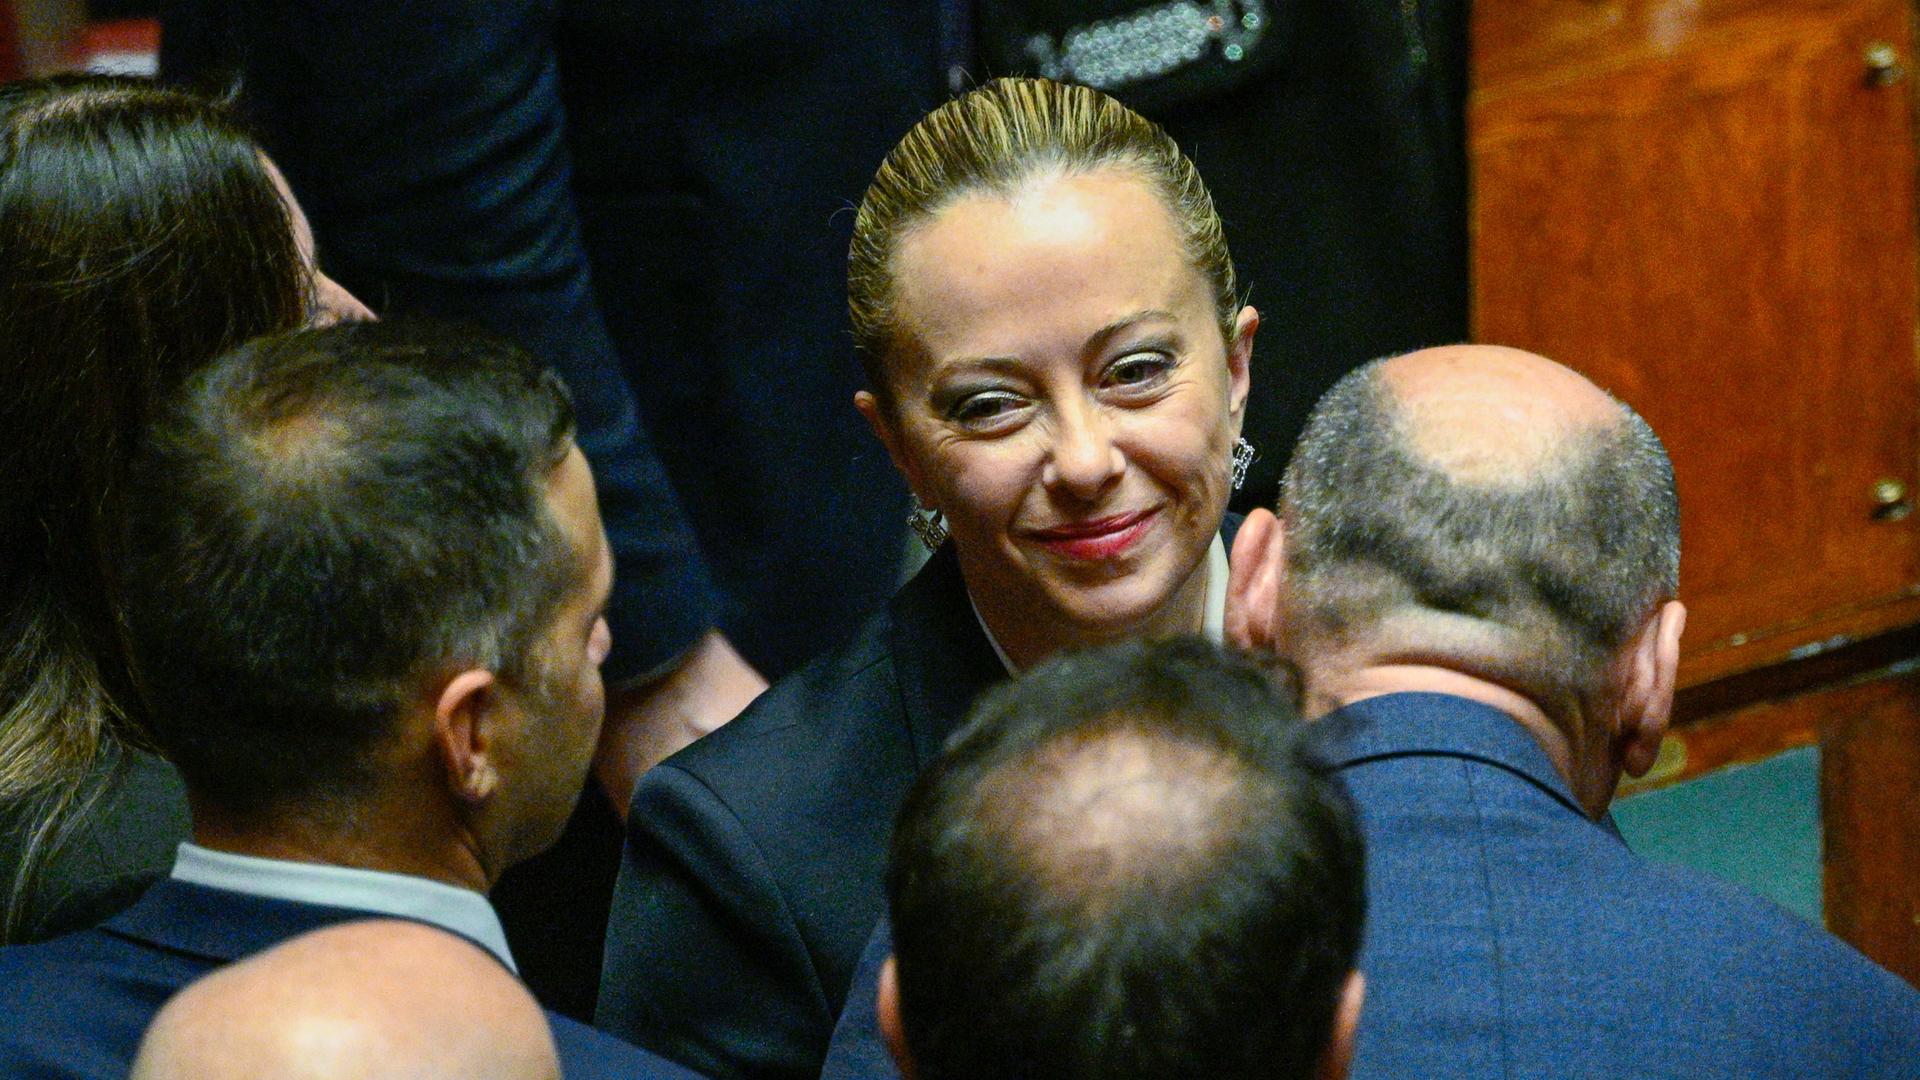 Wahlsiegerin Giorgia Meloni, Vorsitzende der rechten Partei Fratelli d’Italia "Brüder Italiens", im Abgeordnetenhaus in Rom am 13.10.2022